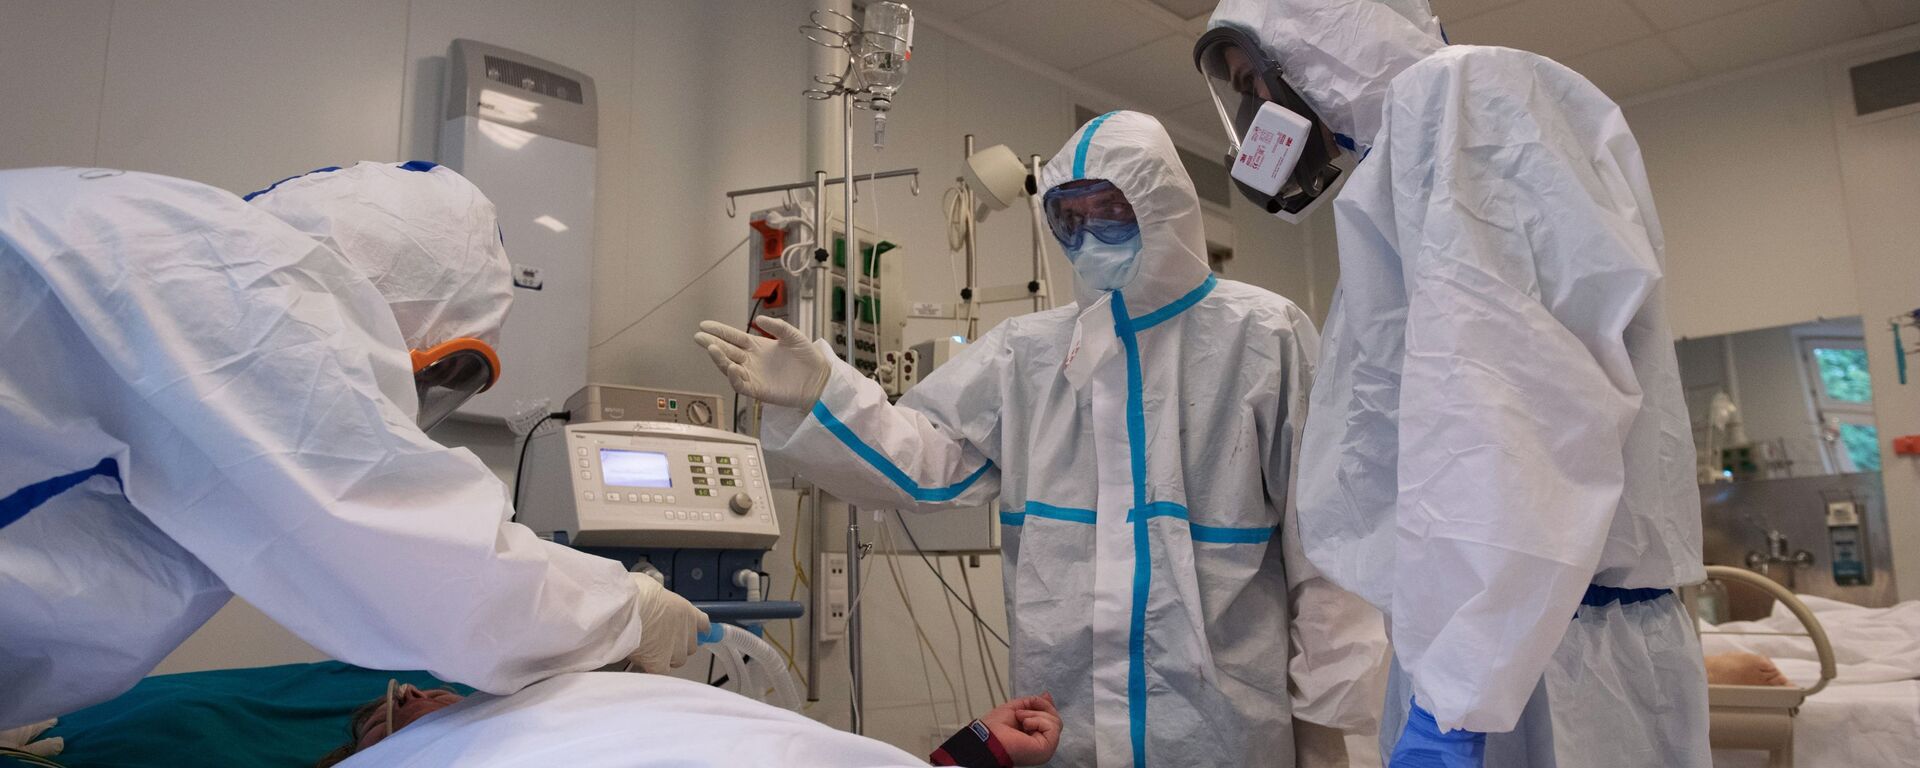 فحص و معالجة مرضى كوفيد-19 (كورونا) في مستشفى بيروغوفا في موسكو، روسيا  18 مايو 2020 - سبوتنيك عربي, 1920, 30.01.2021